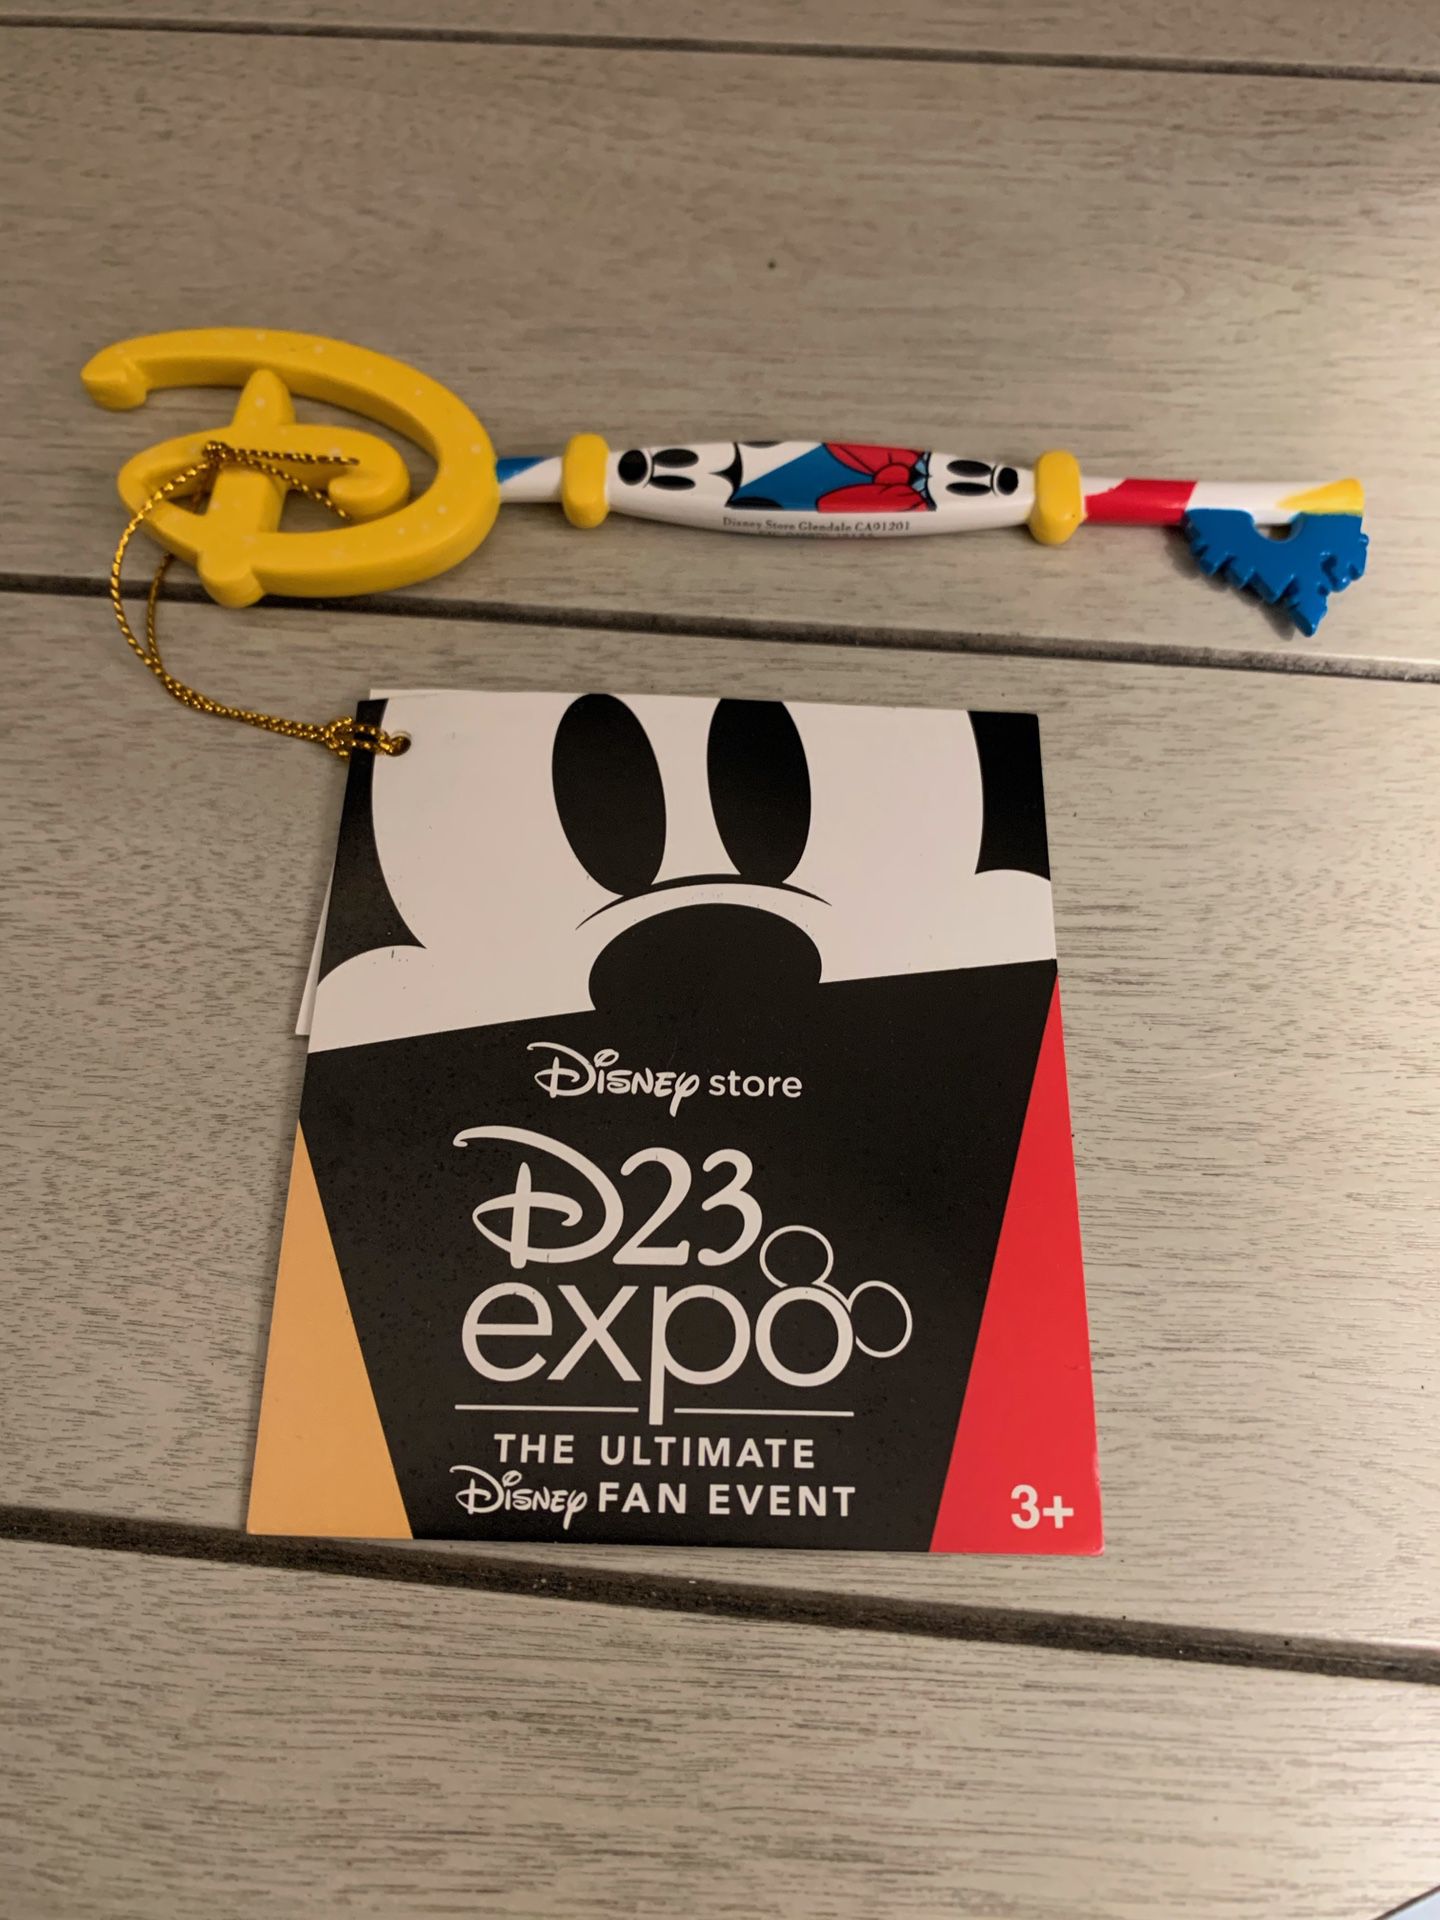 Disney Key D23 expo